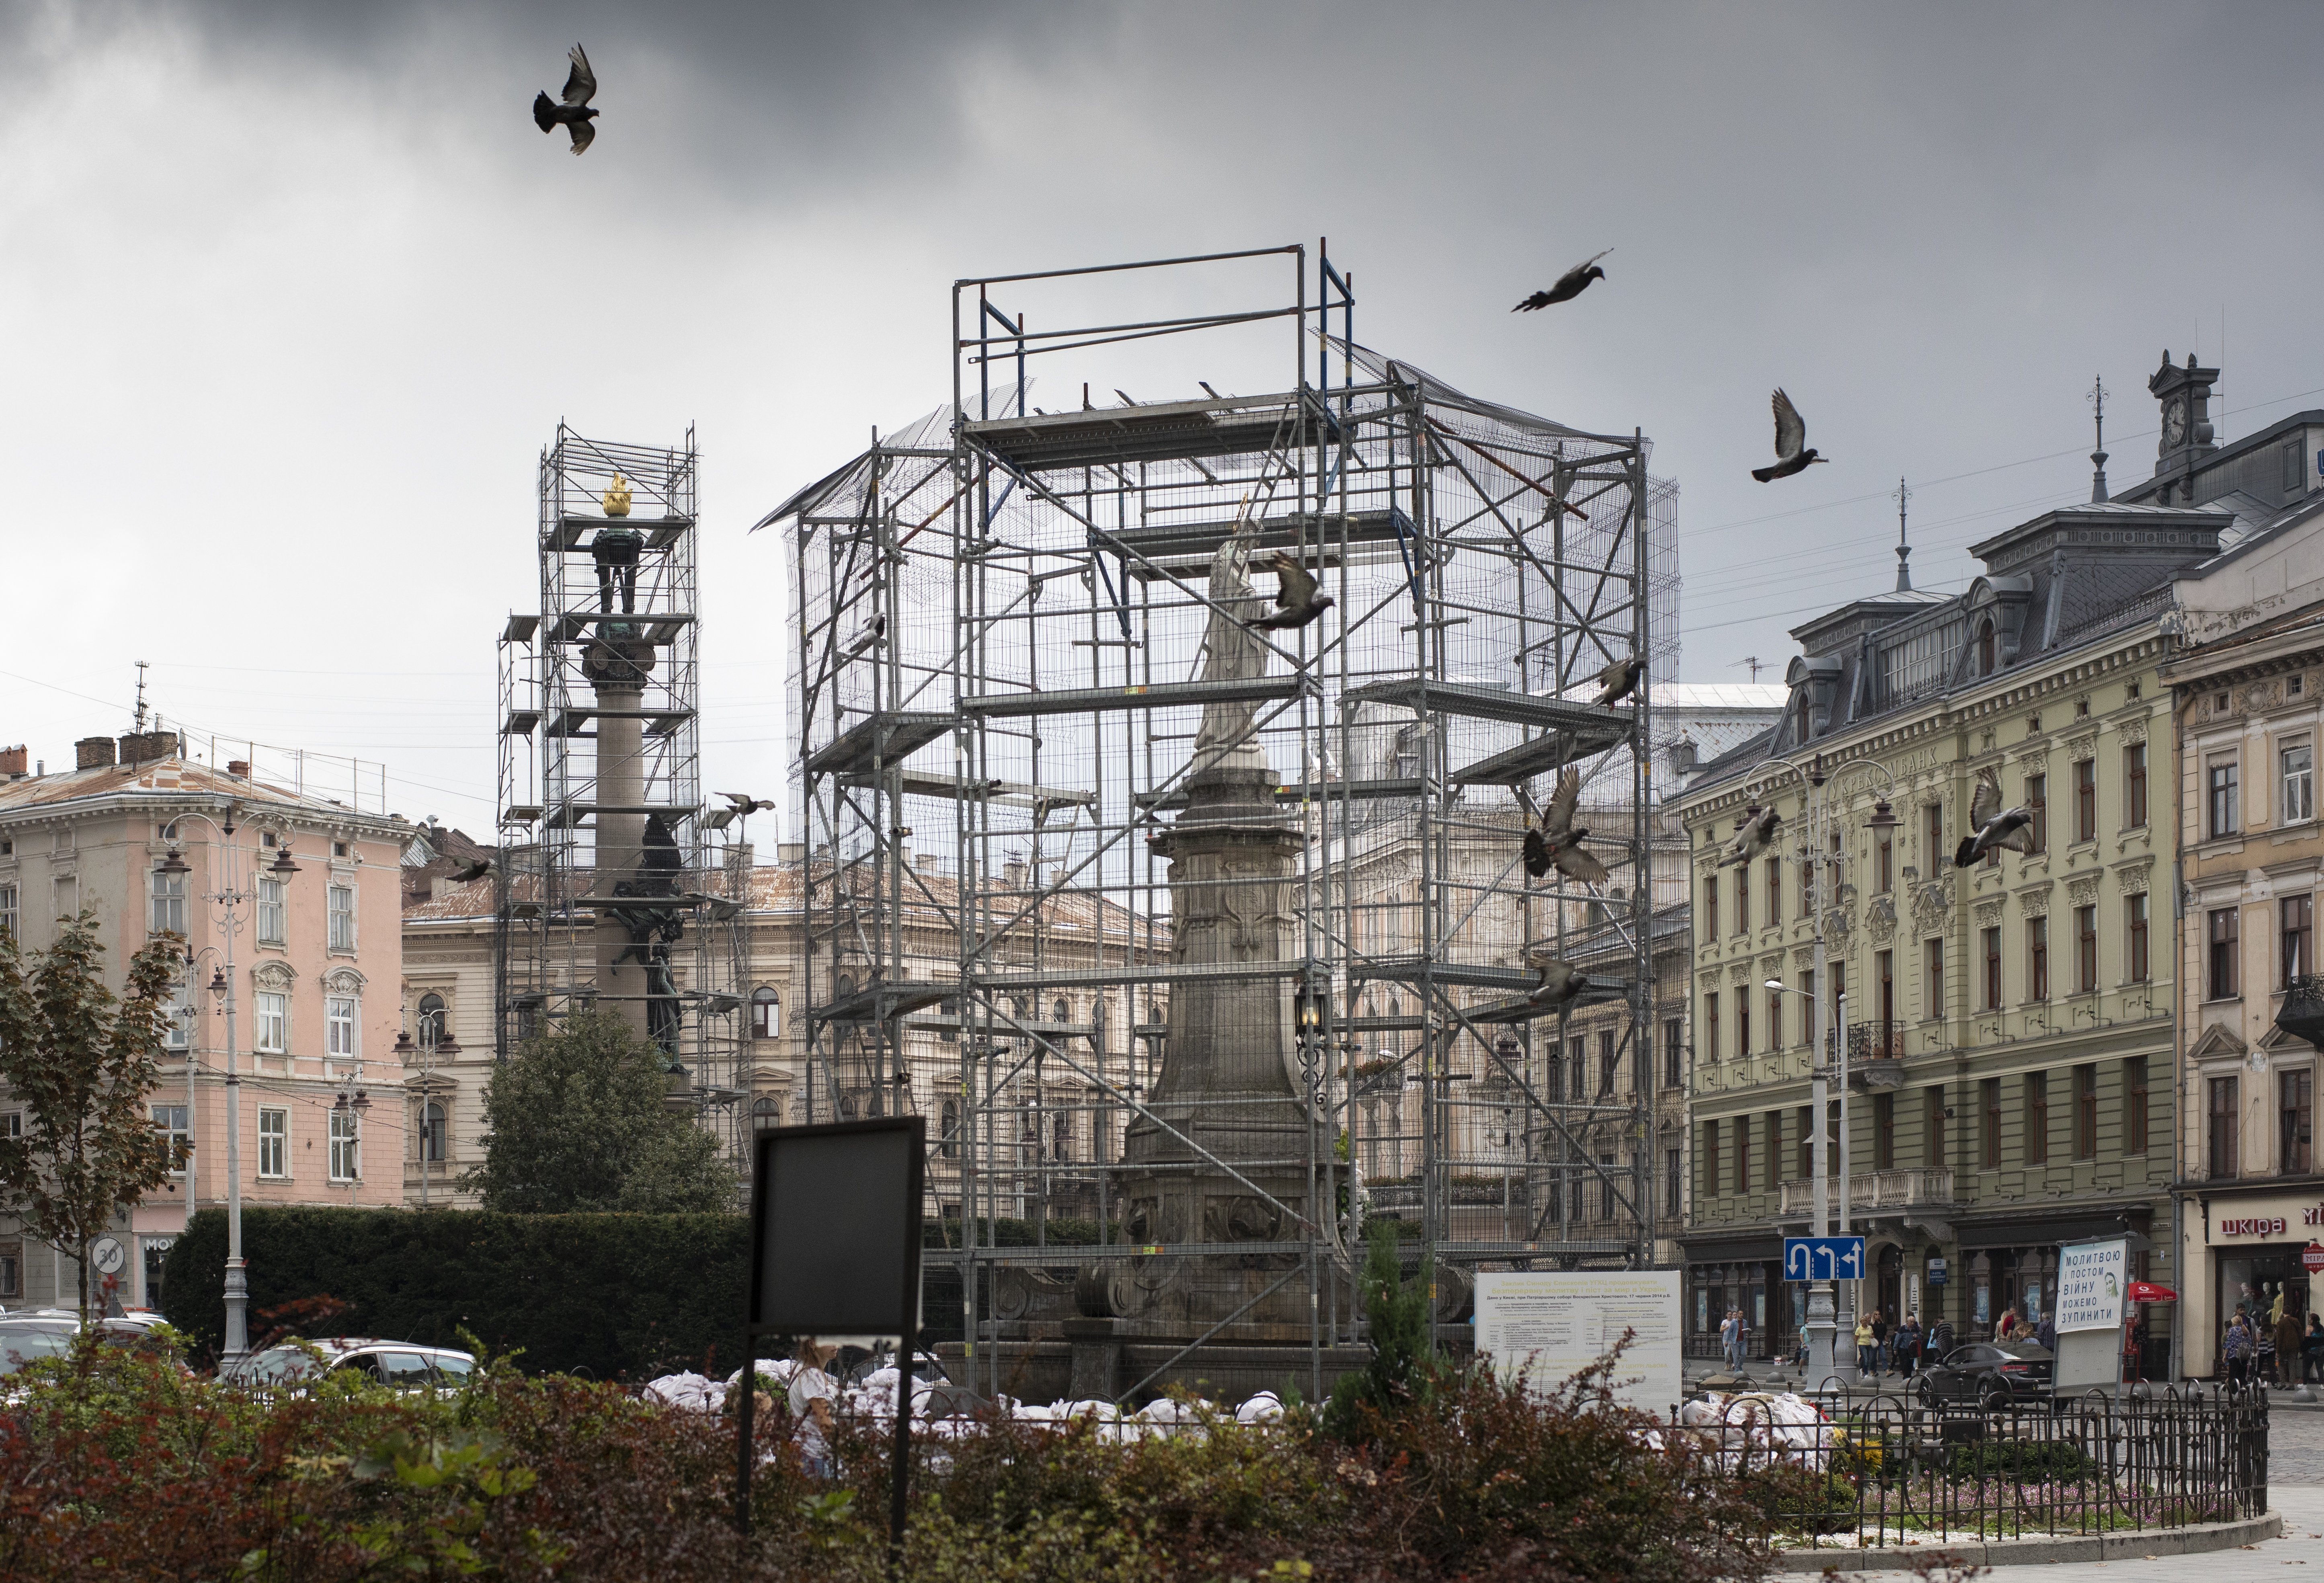 Beelden op een plein in Lviv, Oekraïne worden ingepakt met stellages, waartegen zandzakken kunnen worden aangeracht. 